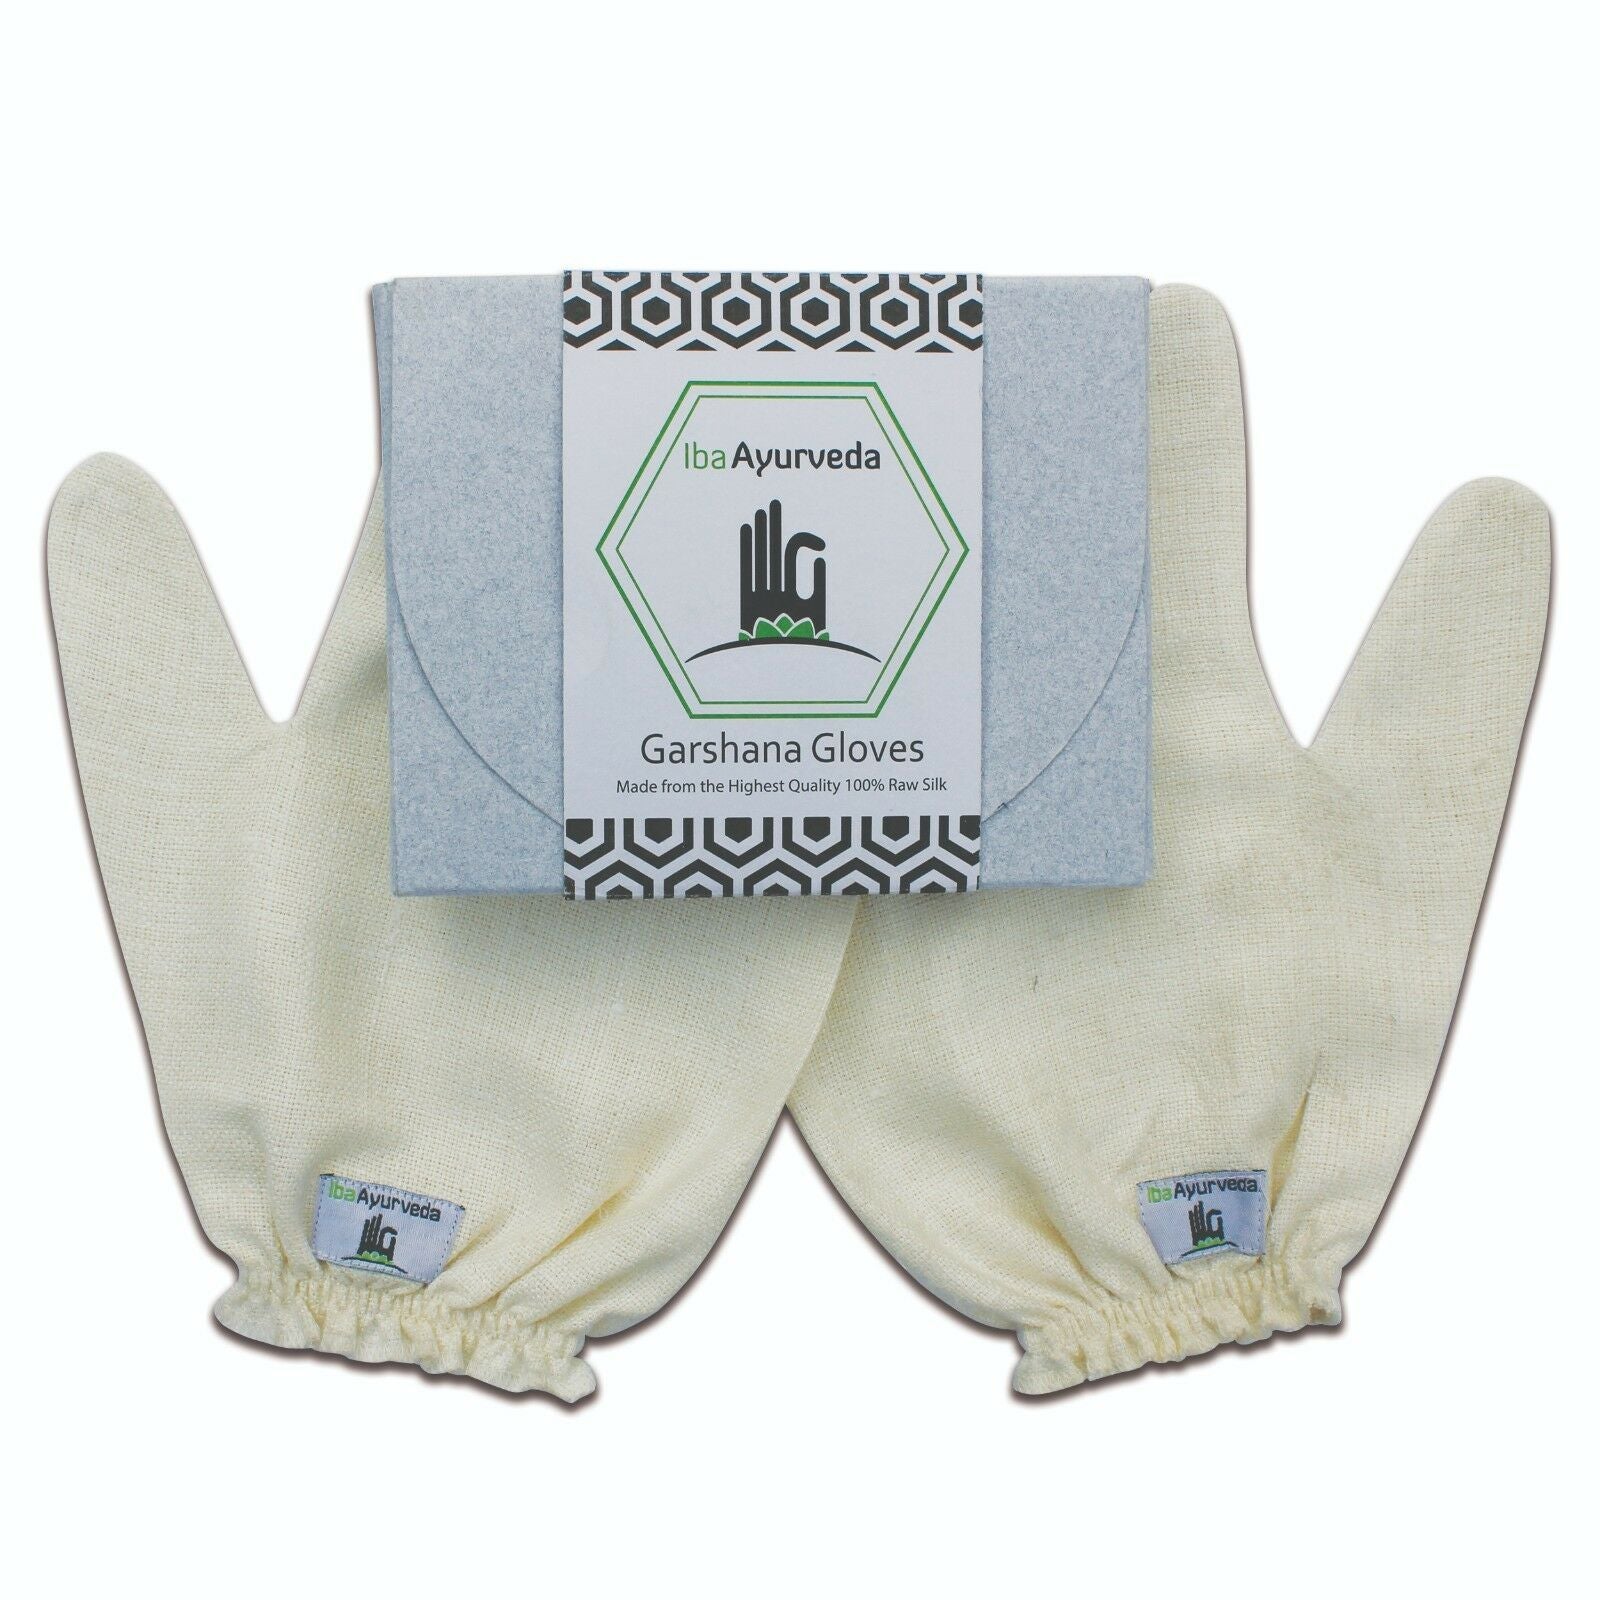 Garshana Gloves - HAB 